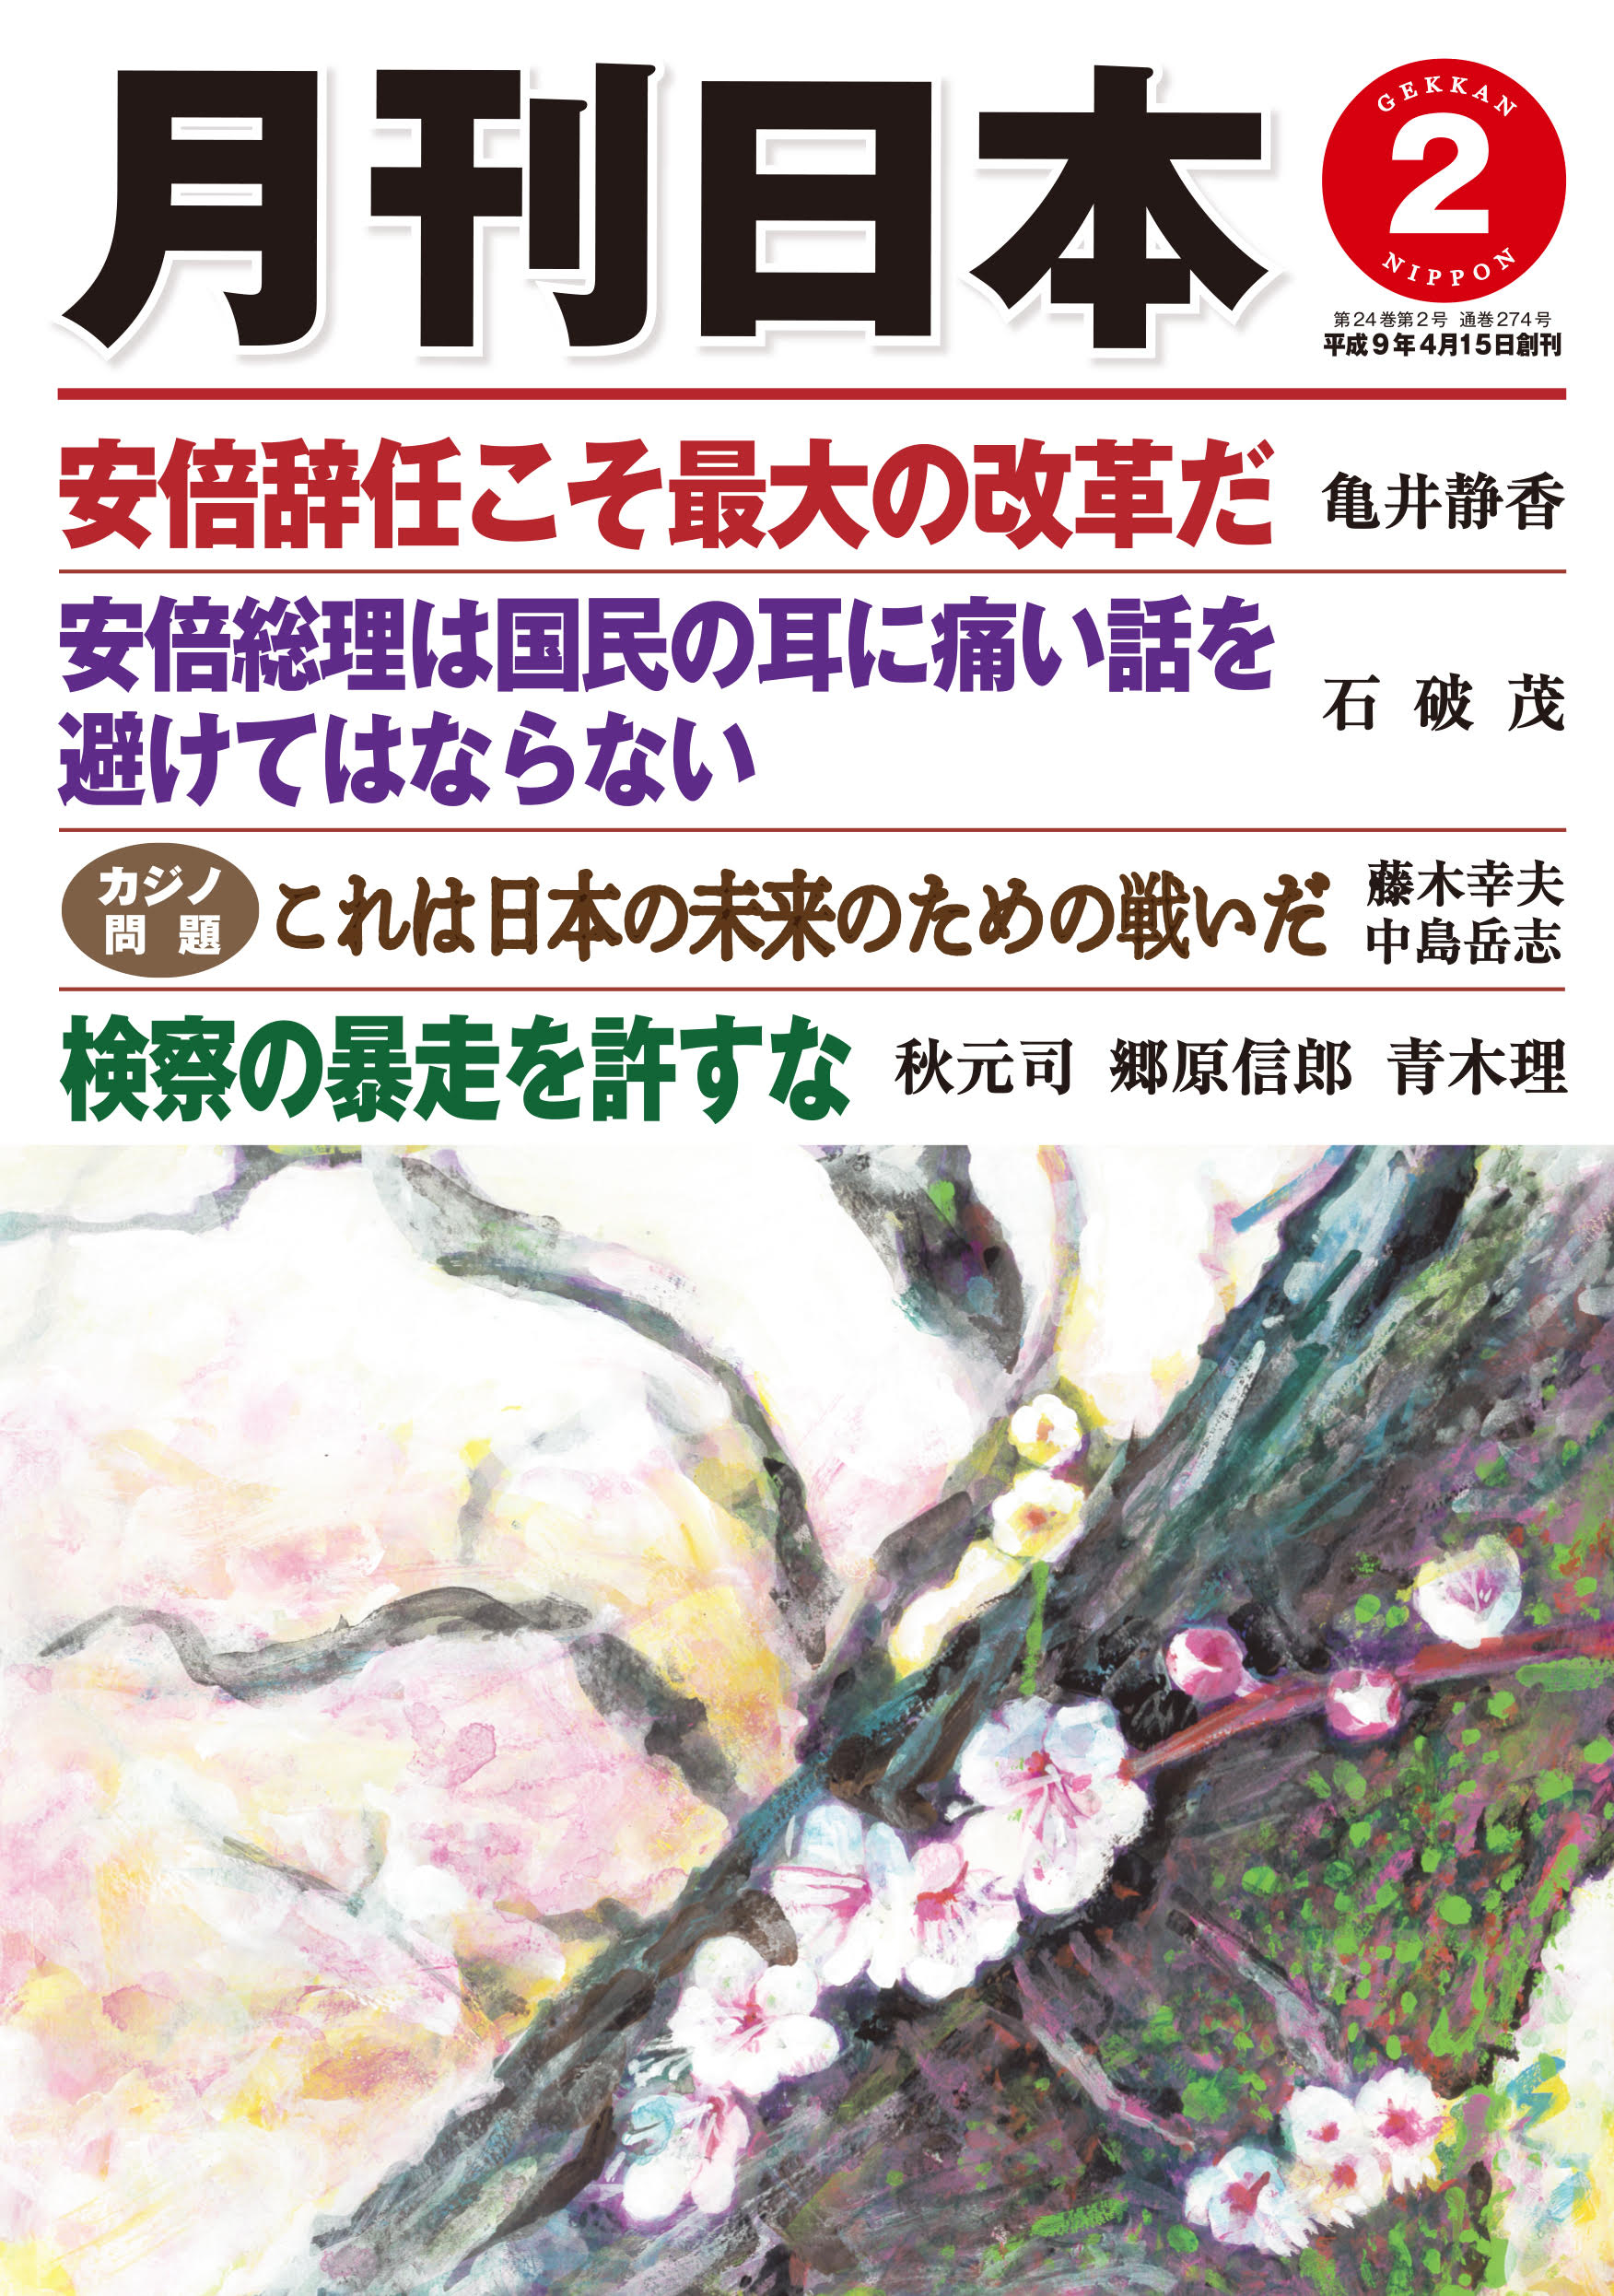 月刊日本2020年2月号 表紙